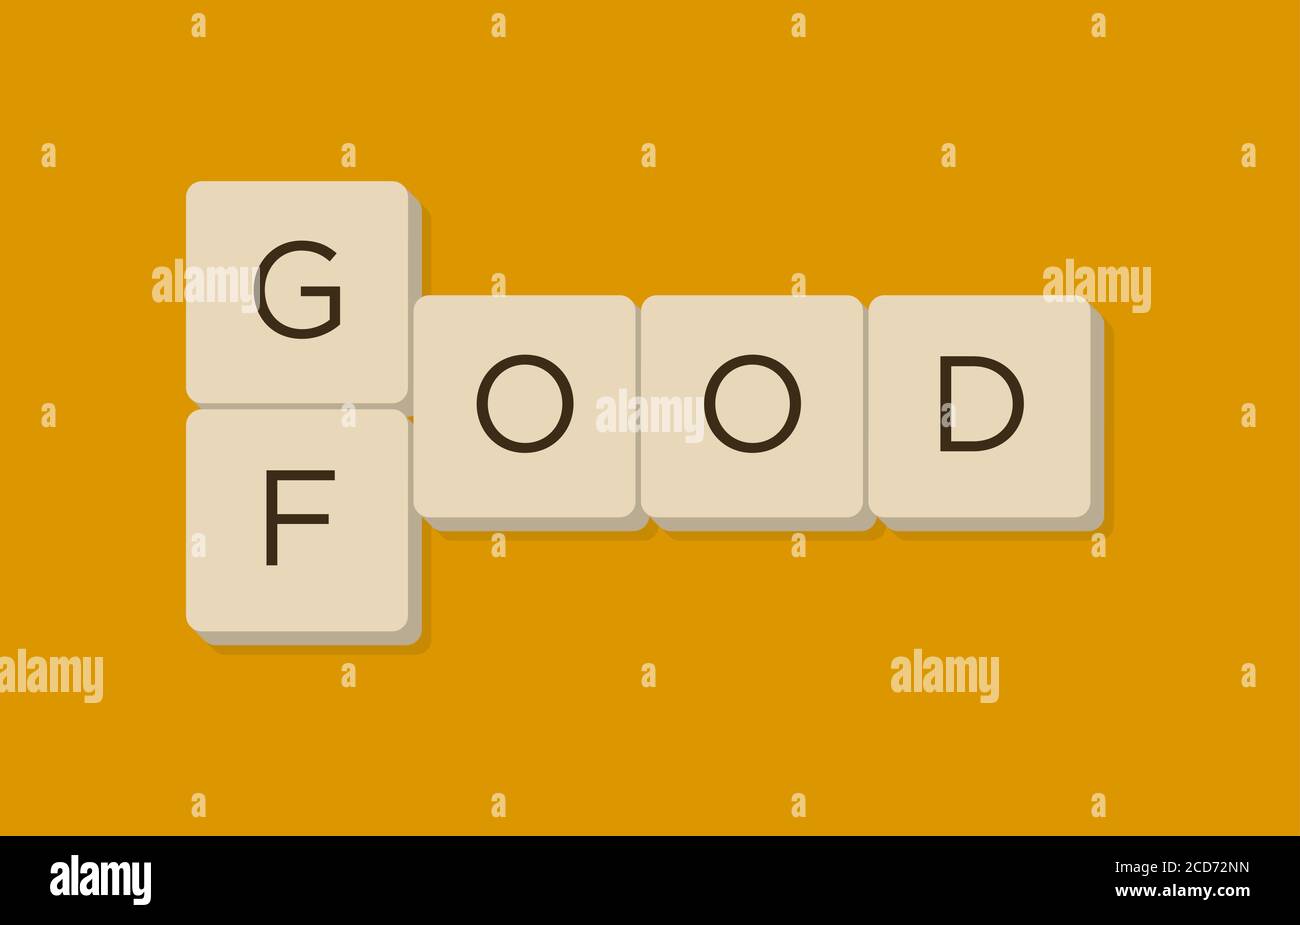 Buena comida juego de palabras en letras scrabble. Aísle la ilustración vectorial. Ilustración del Vector